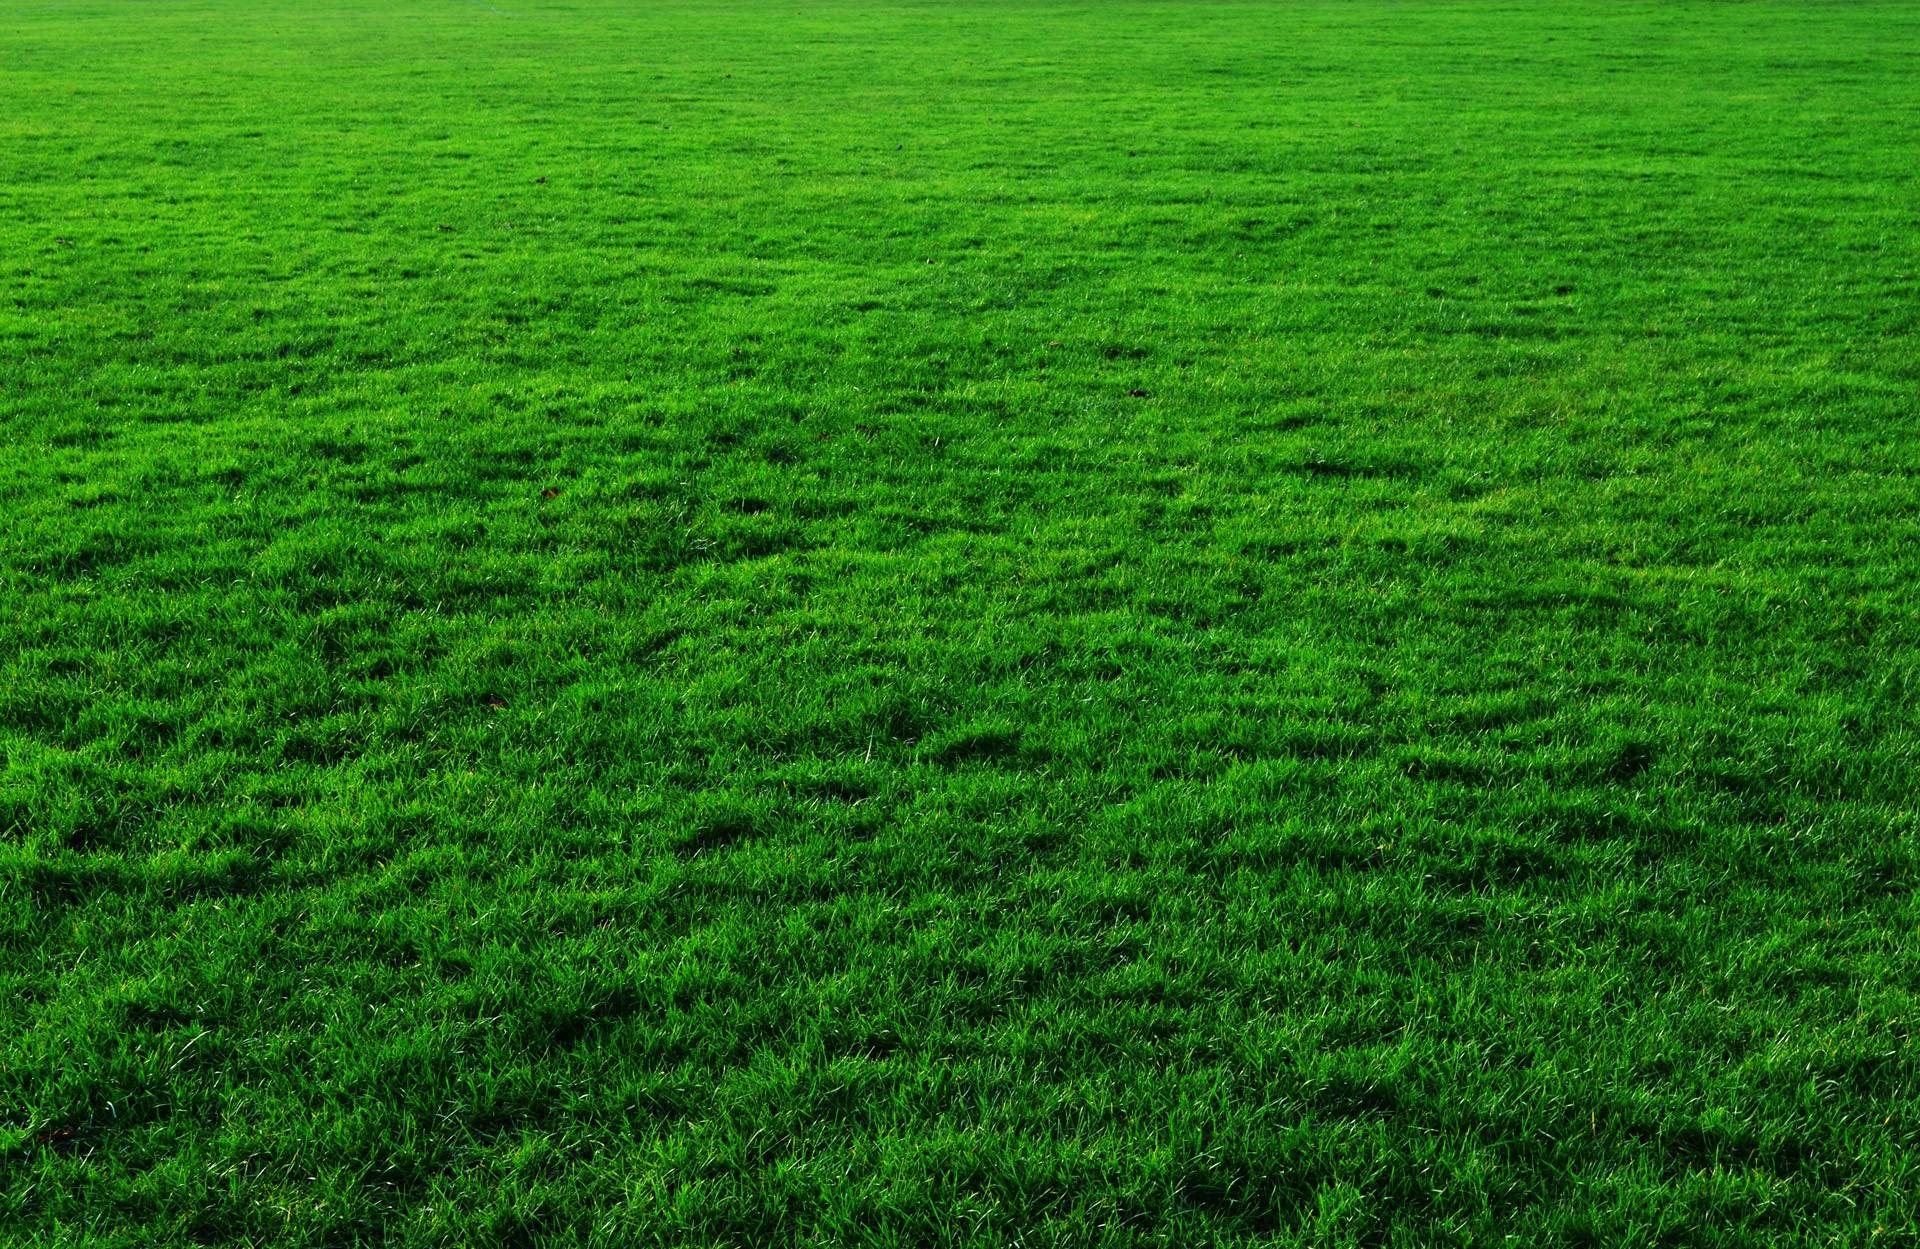 Artificial Turf Versus Real Grass in Colorado